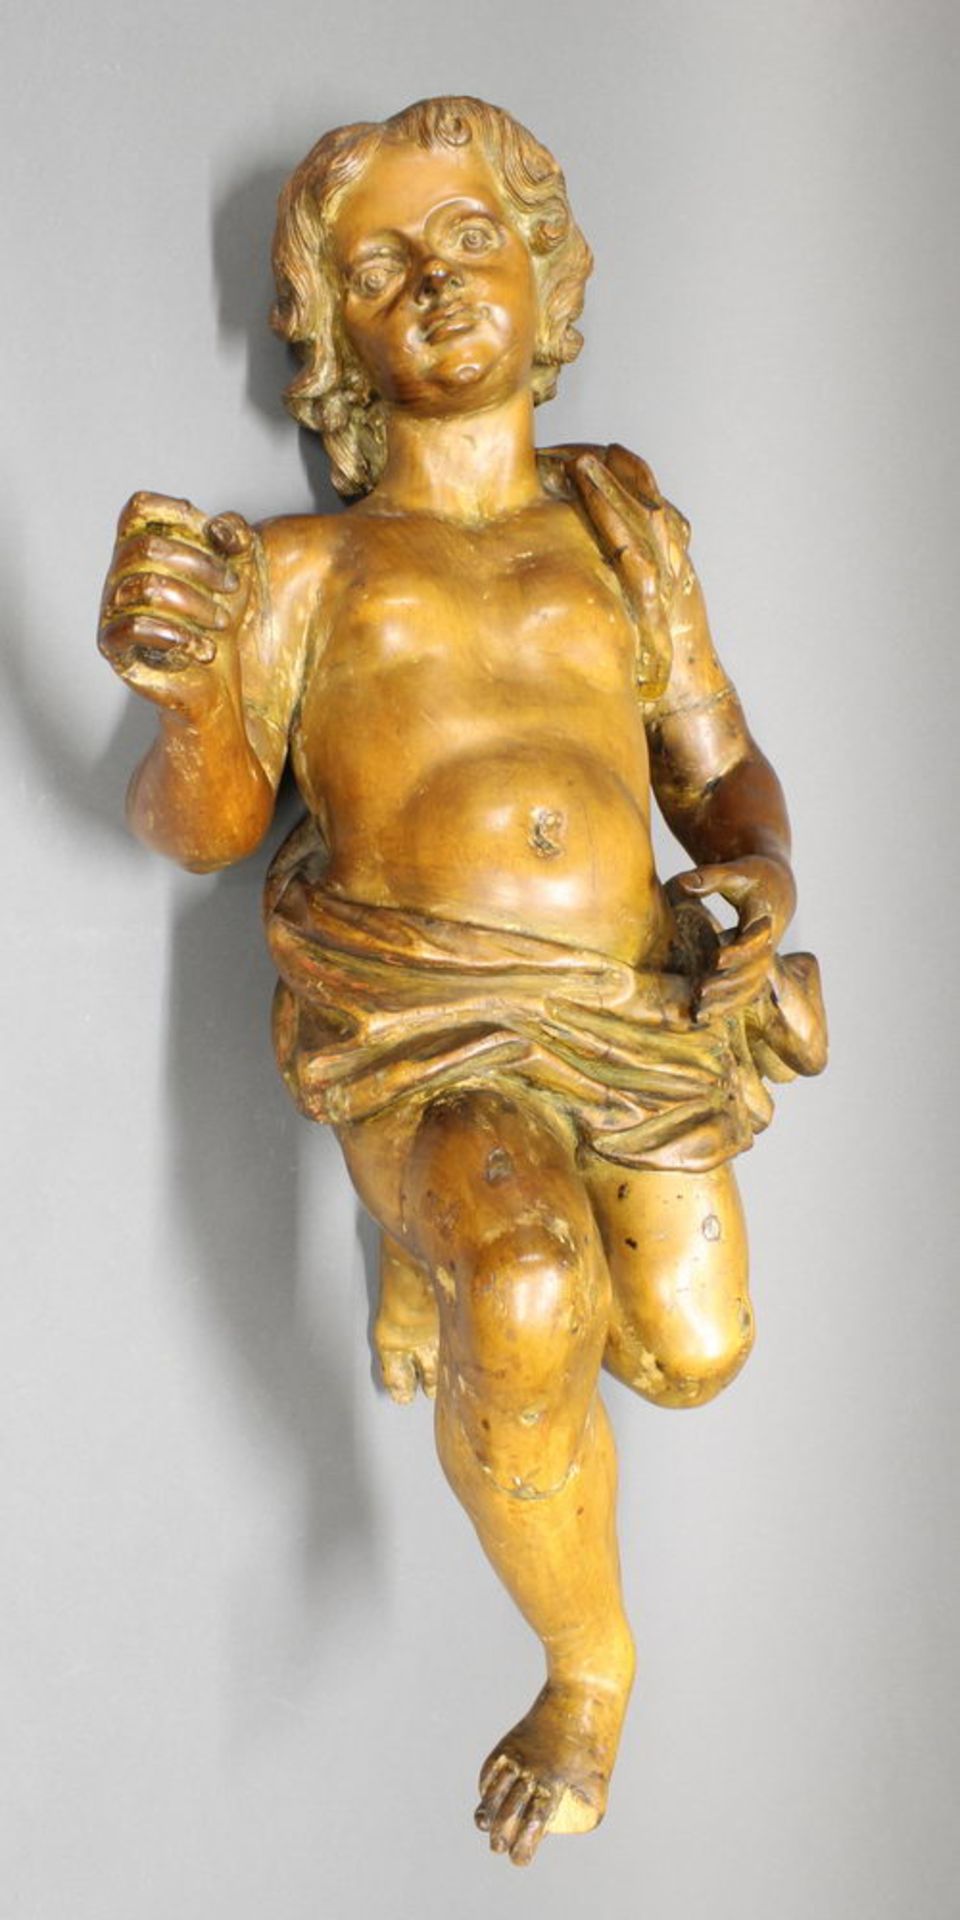 Skulptur, Holz geschnitzt, "Putto", 18./19. Jh., abgelaugt, 80 cm hoch, ein Finger und eine Zehe fe - Image 2 of 4